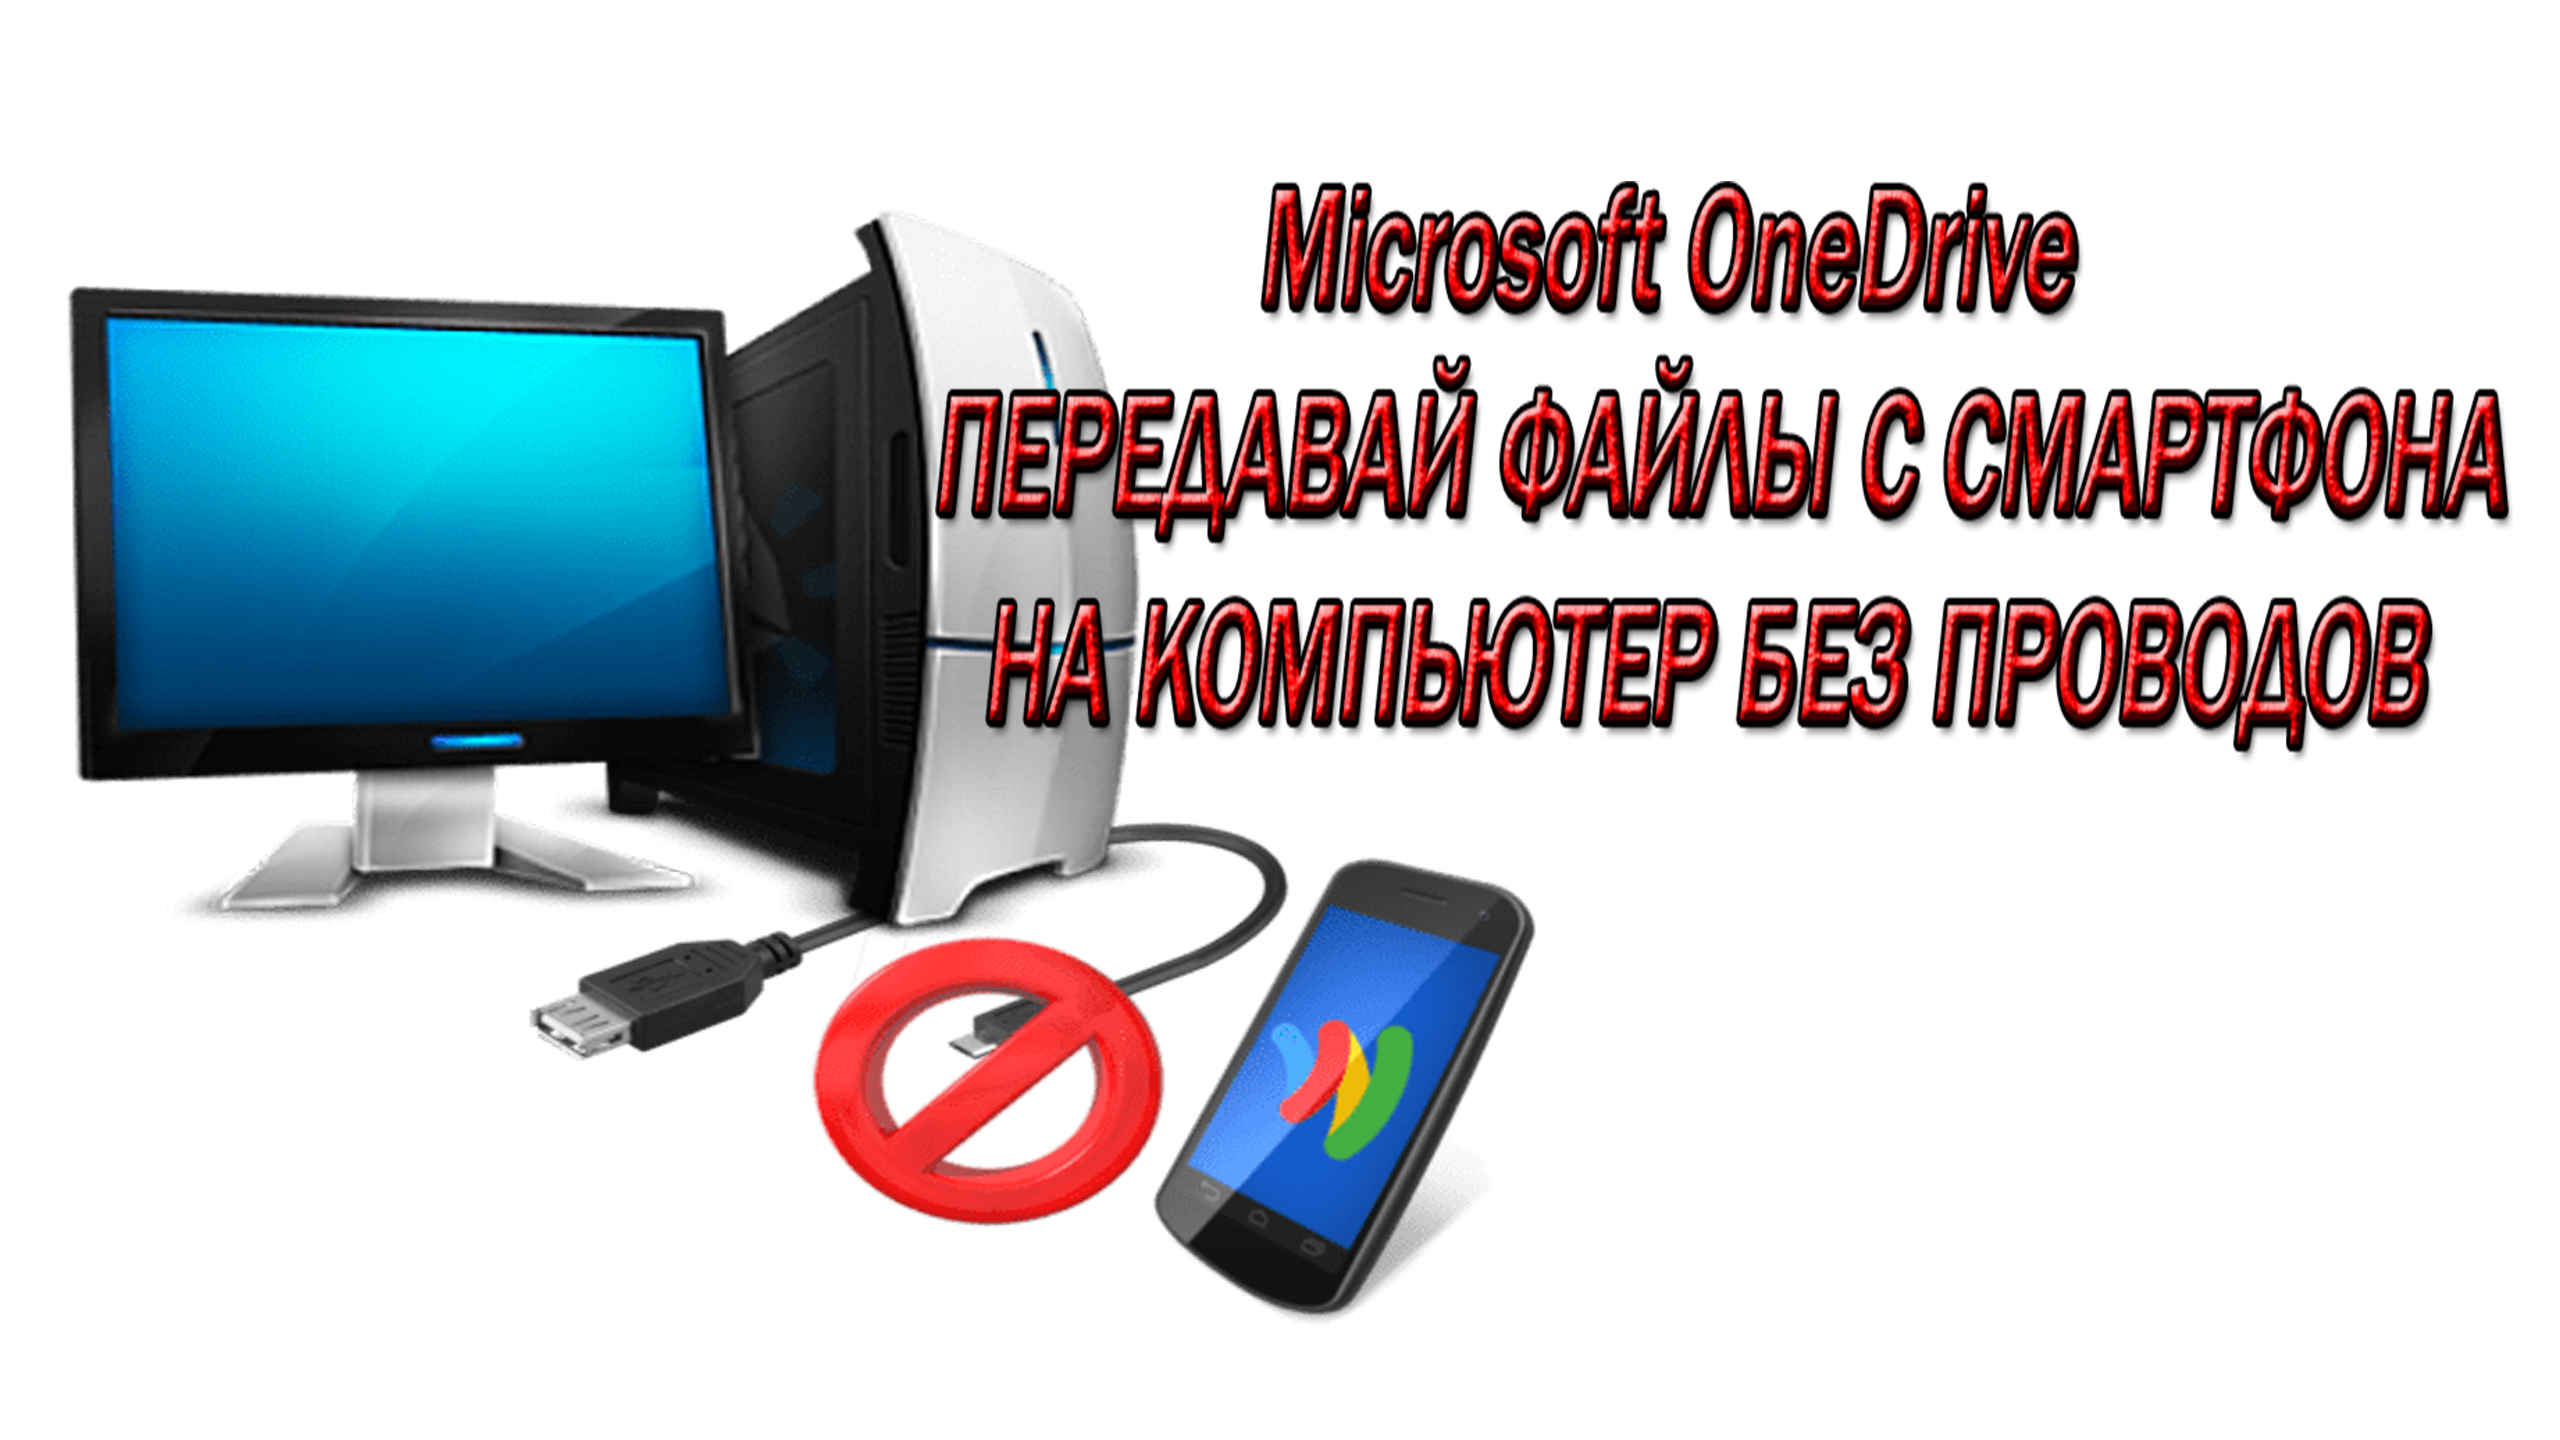 Облачное хранилище Microsoft OneDrive - Соедени Смартфон и ПК без проводов